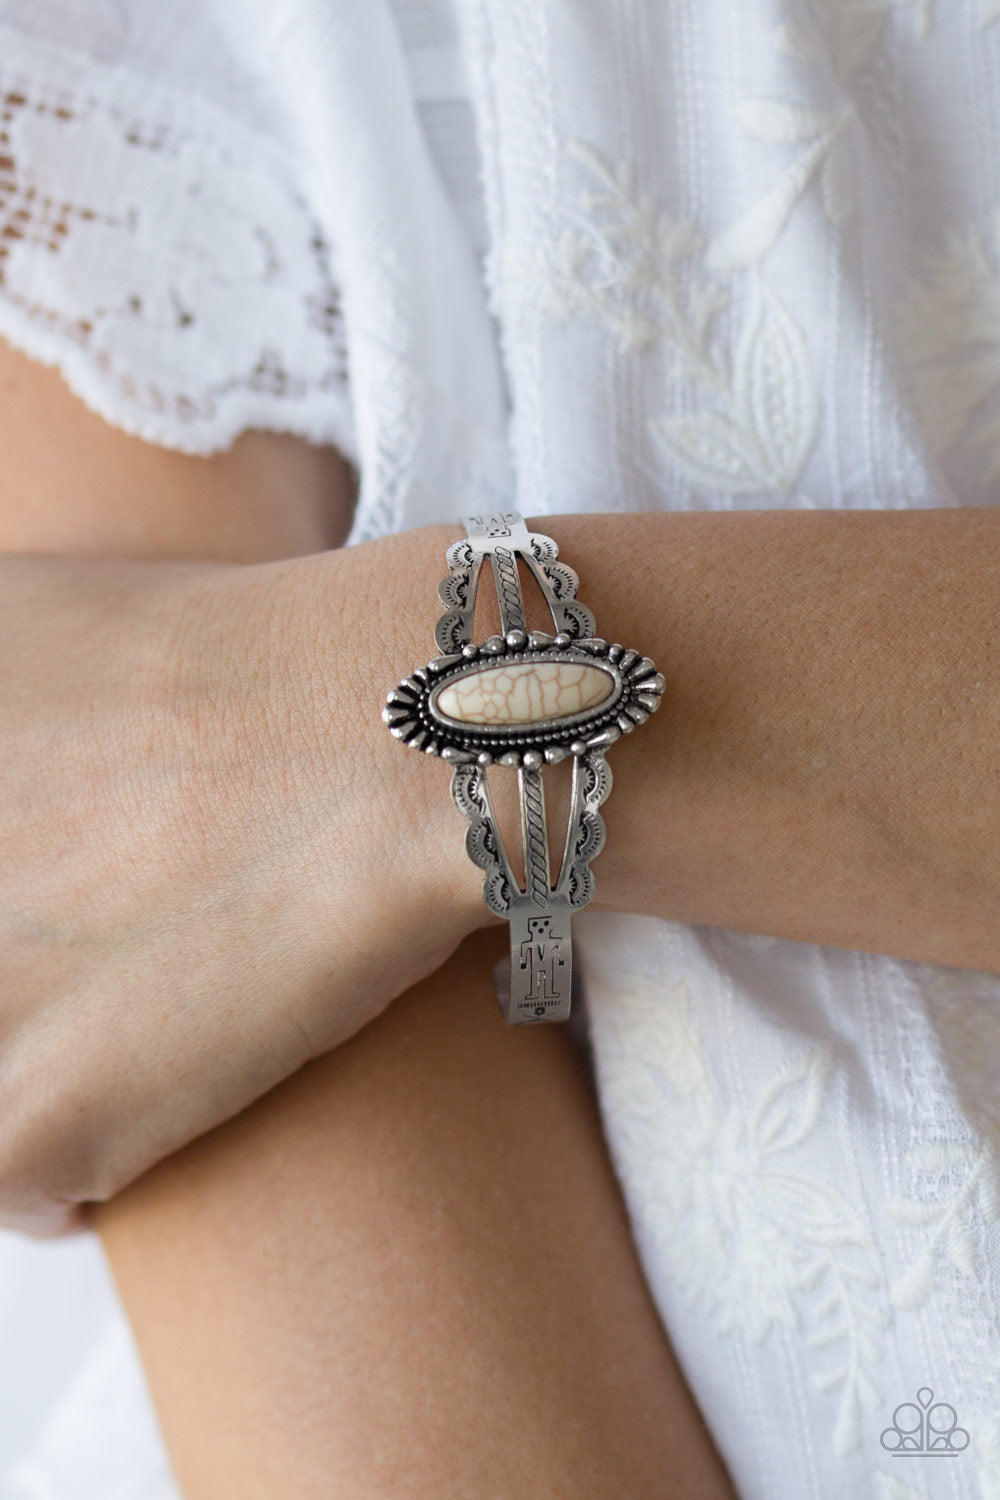 Paparazzi Desert Sage - White Stone - Cuff Bracelet - $5 Jewelry With Ashley Swint